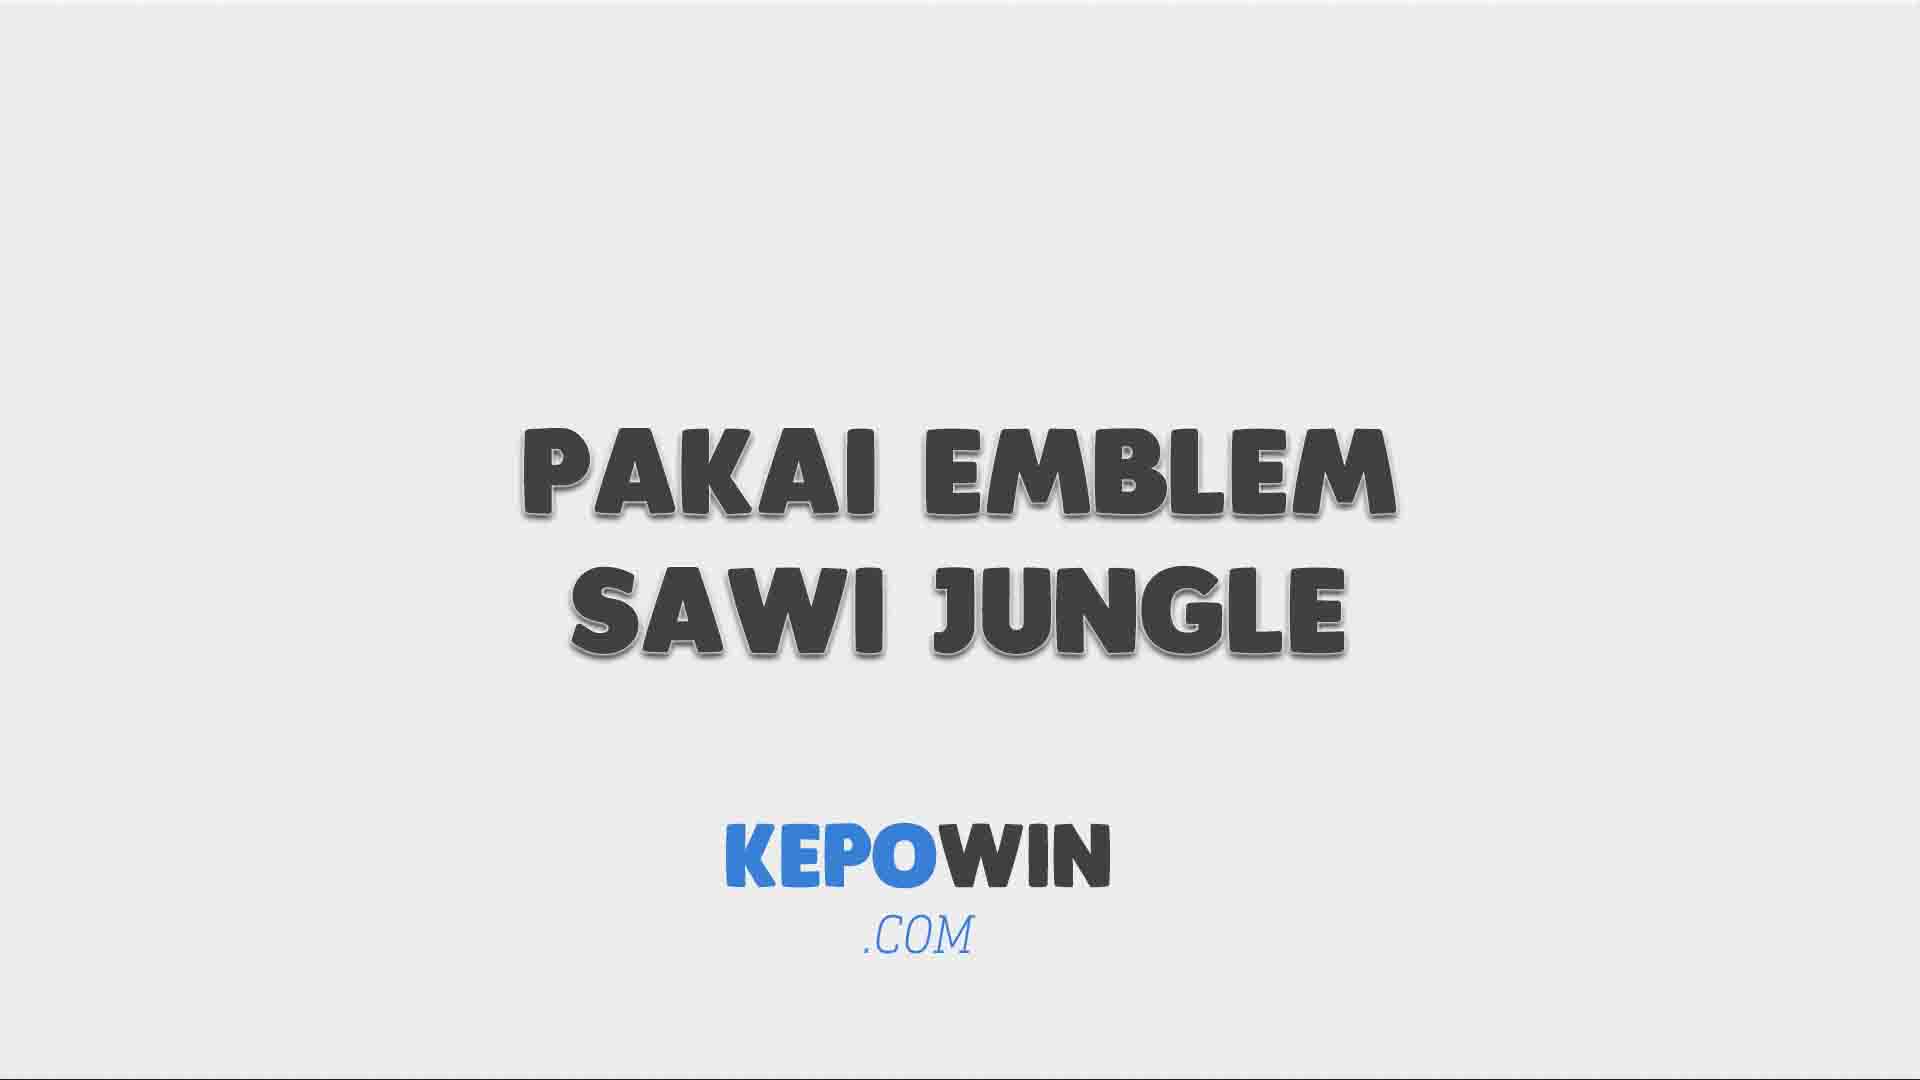 Pakai Emblem Sawi Jungle